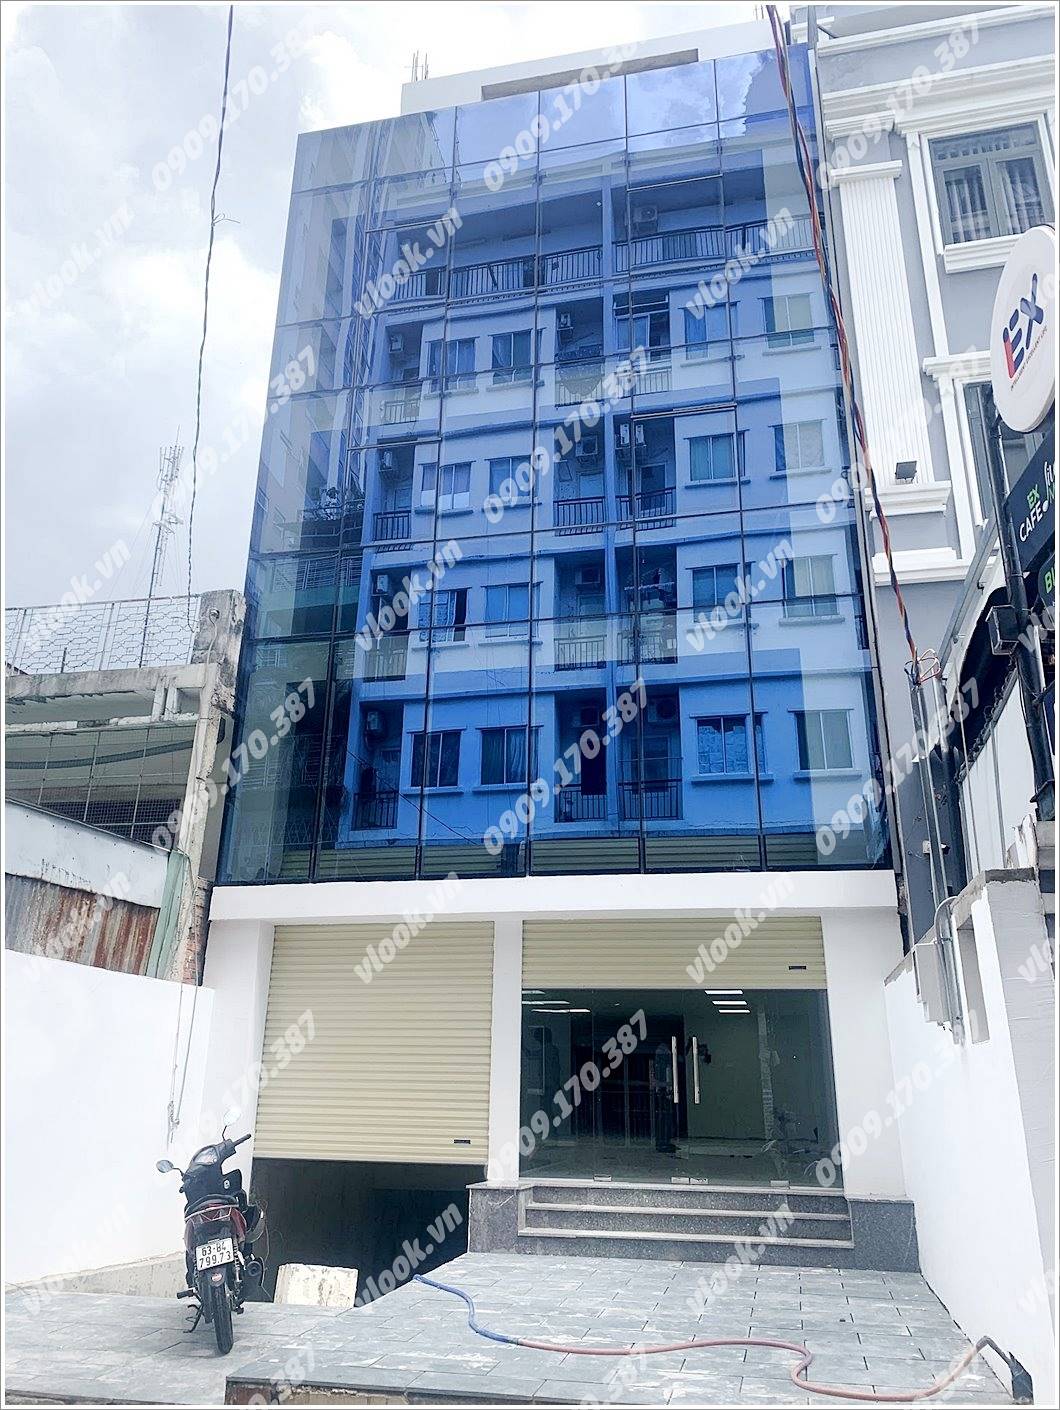 Cao ốc văn phòng cho thuê tòa nhà An Tâm Office Building, Nguyễn Gia Trí, Quận Bình Thạnh, TPHCM - vlook.vn